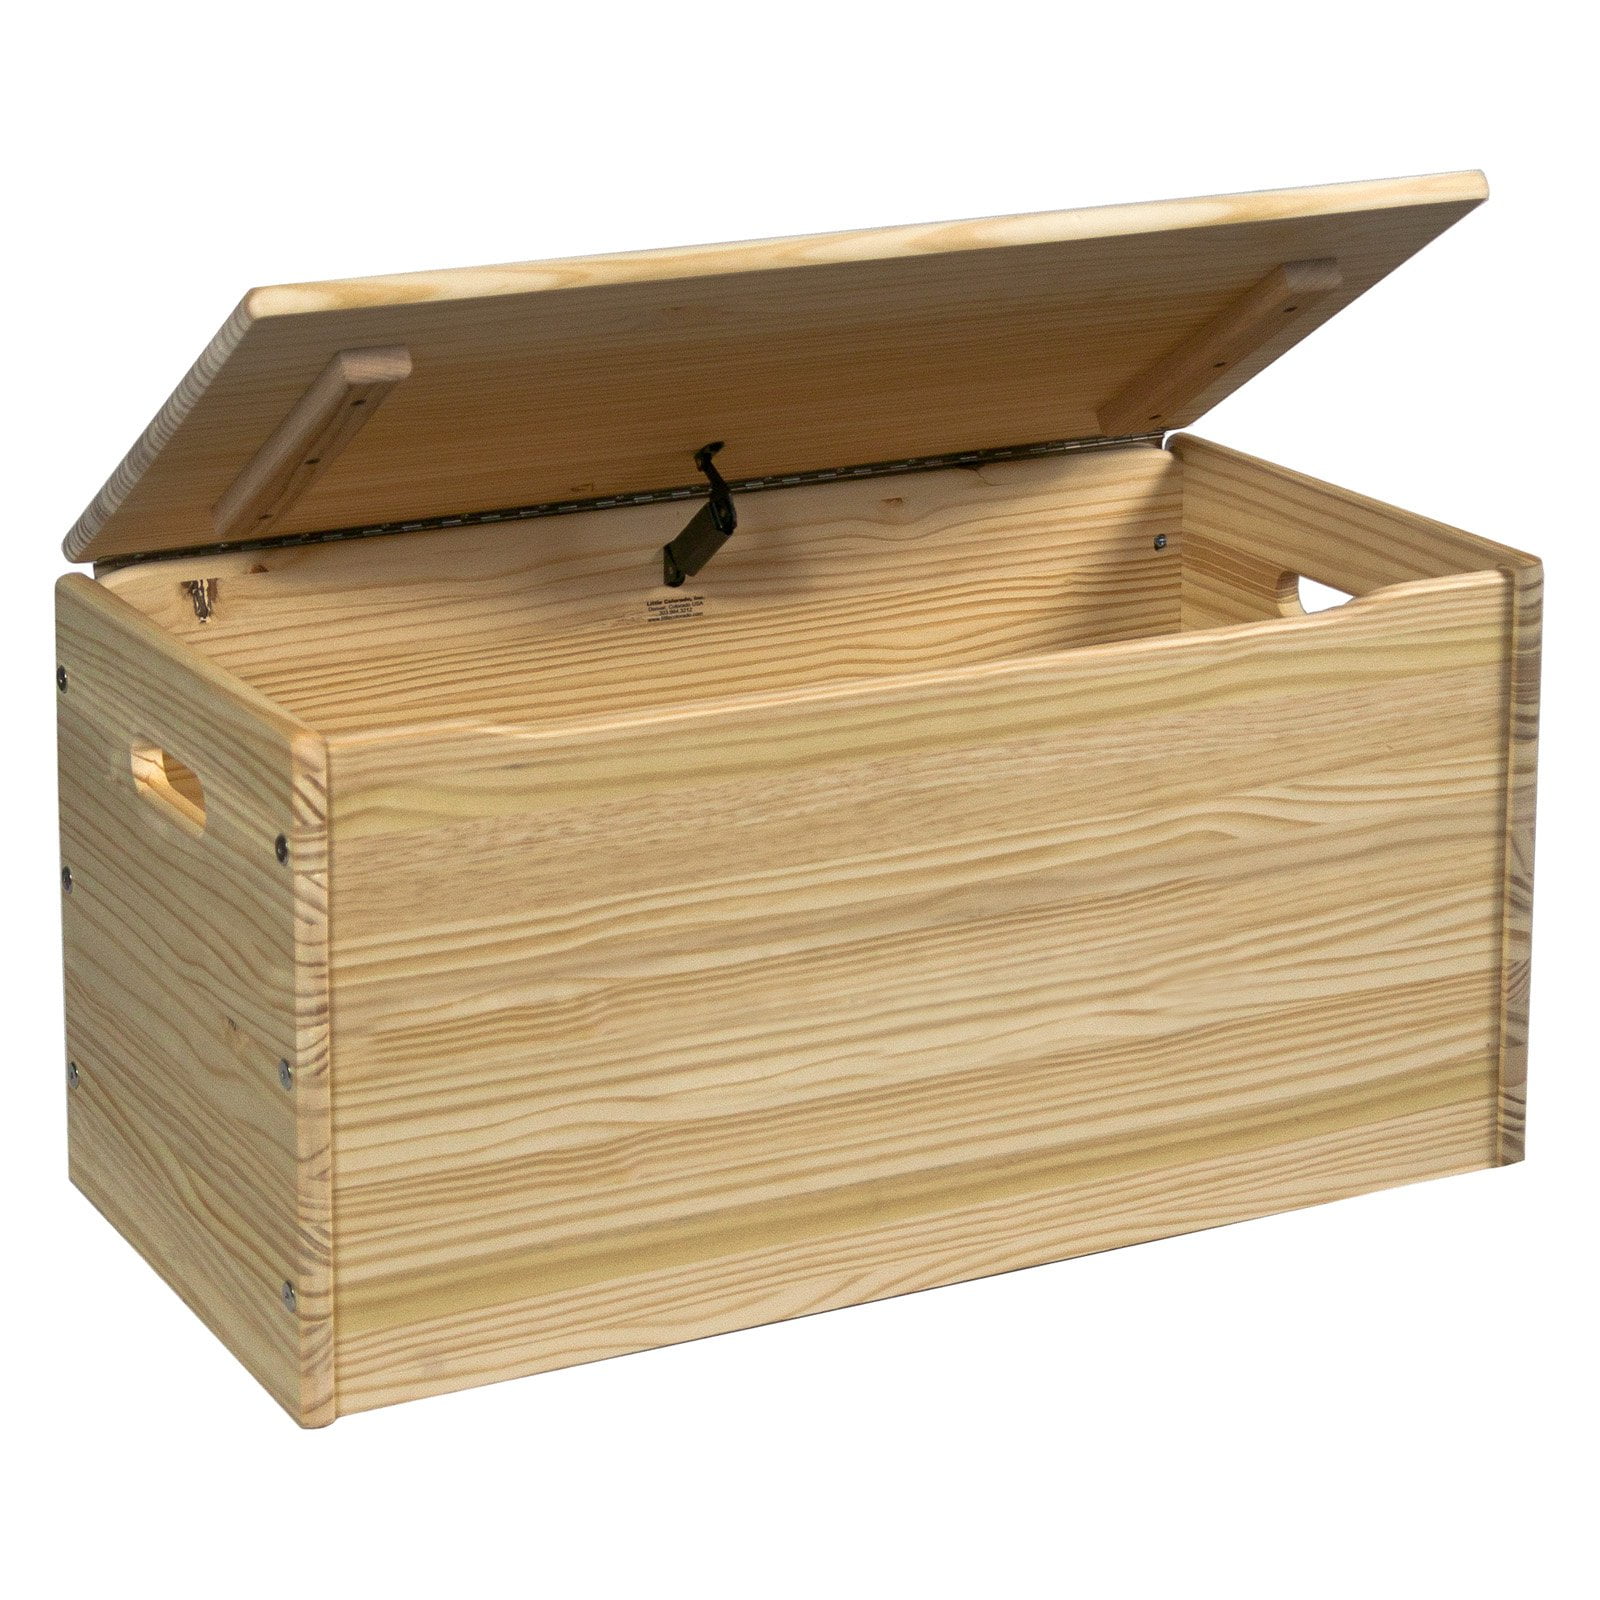 Деревянная коробка с крышкой. Сундук икеа деревянный. Сундук Леруа Мерлен. Деревянный ящик для хранения. Деревянный короб для хранения.